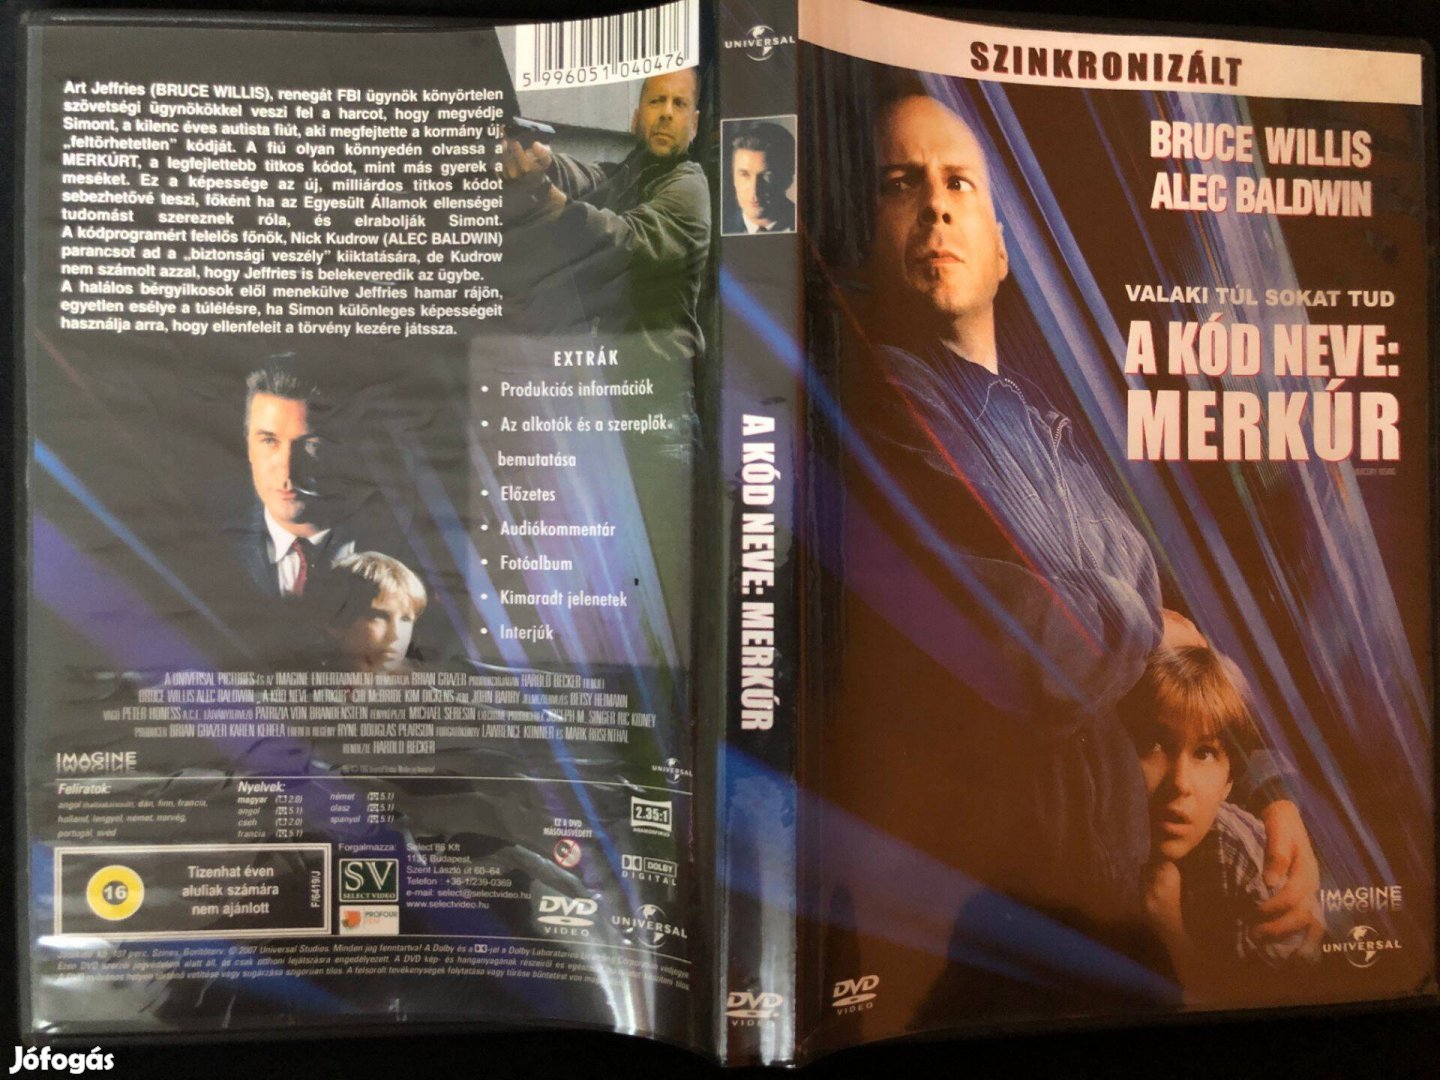 A kód neve Merkúr (karcmentes, Bruce Willis, Alec Baldwin) DVD